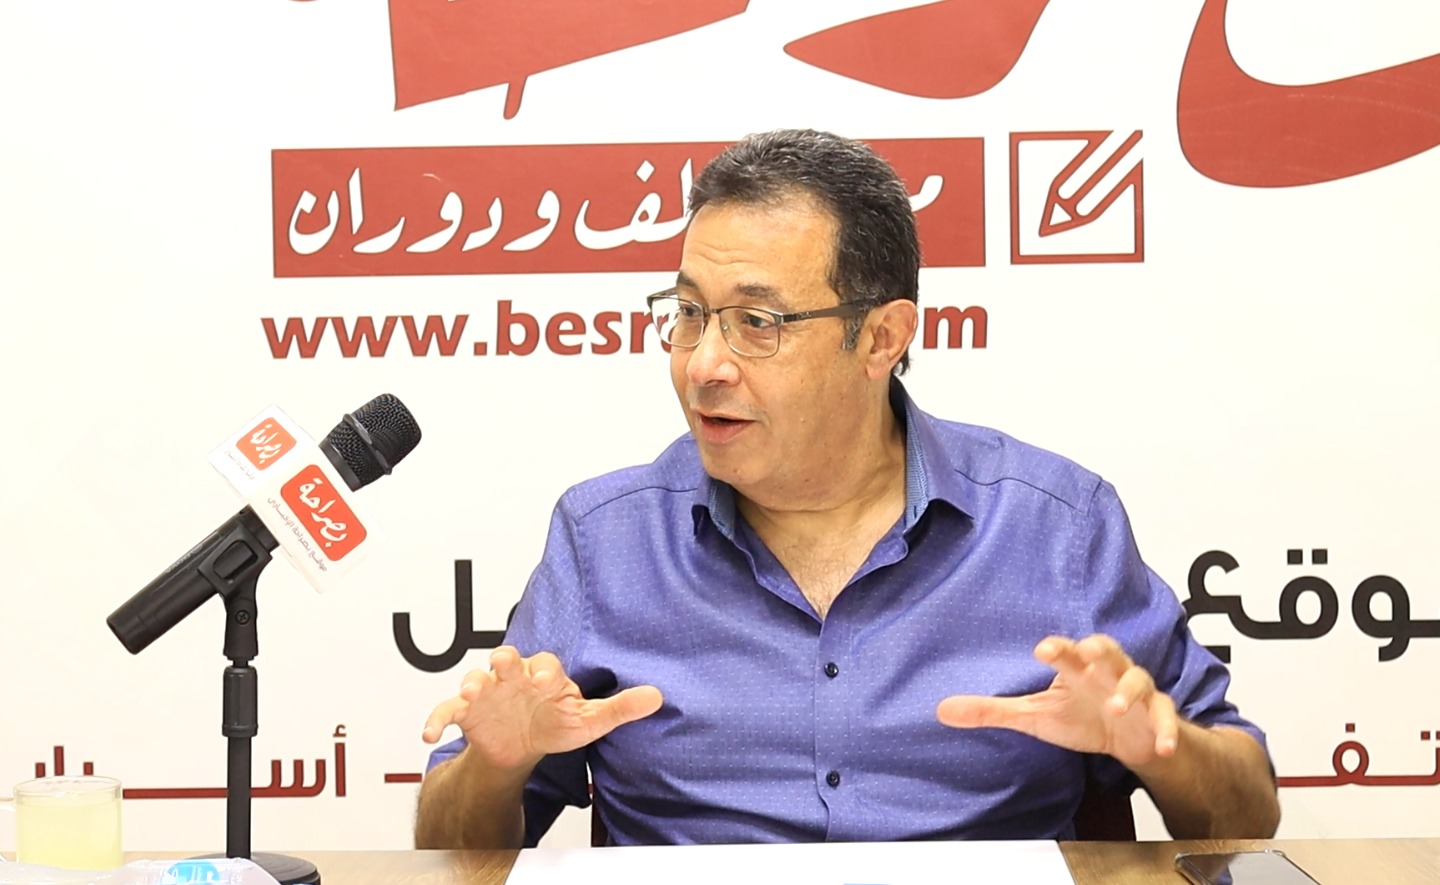 الكاتب الصحفي الكبير محمد هاني